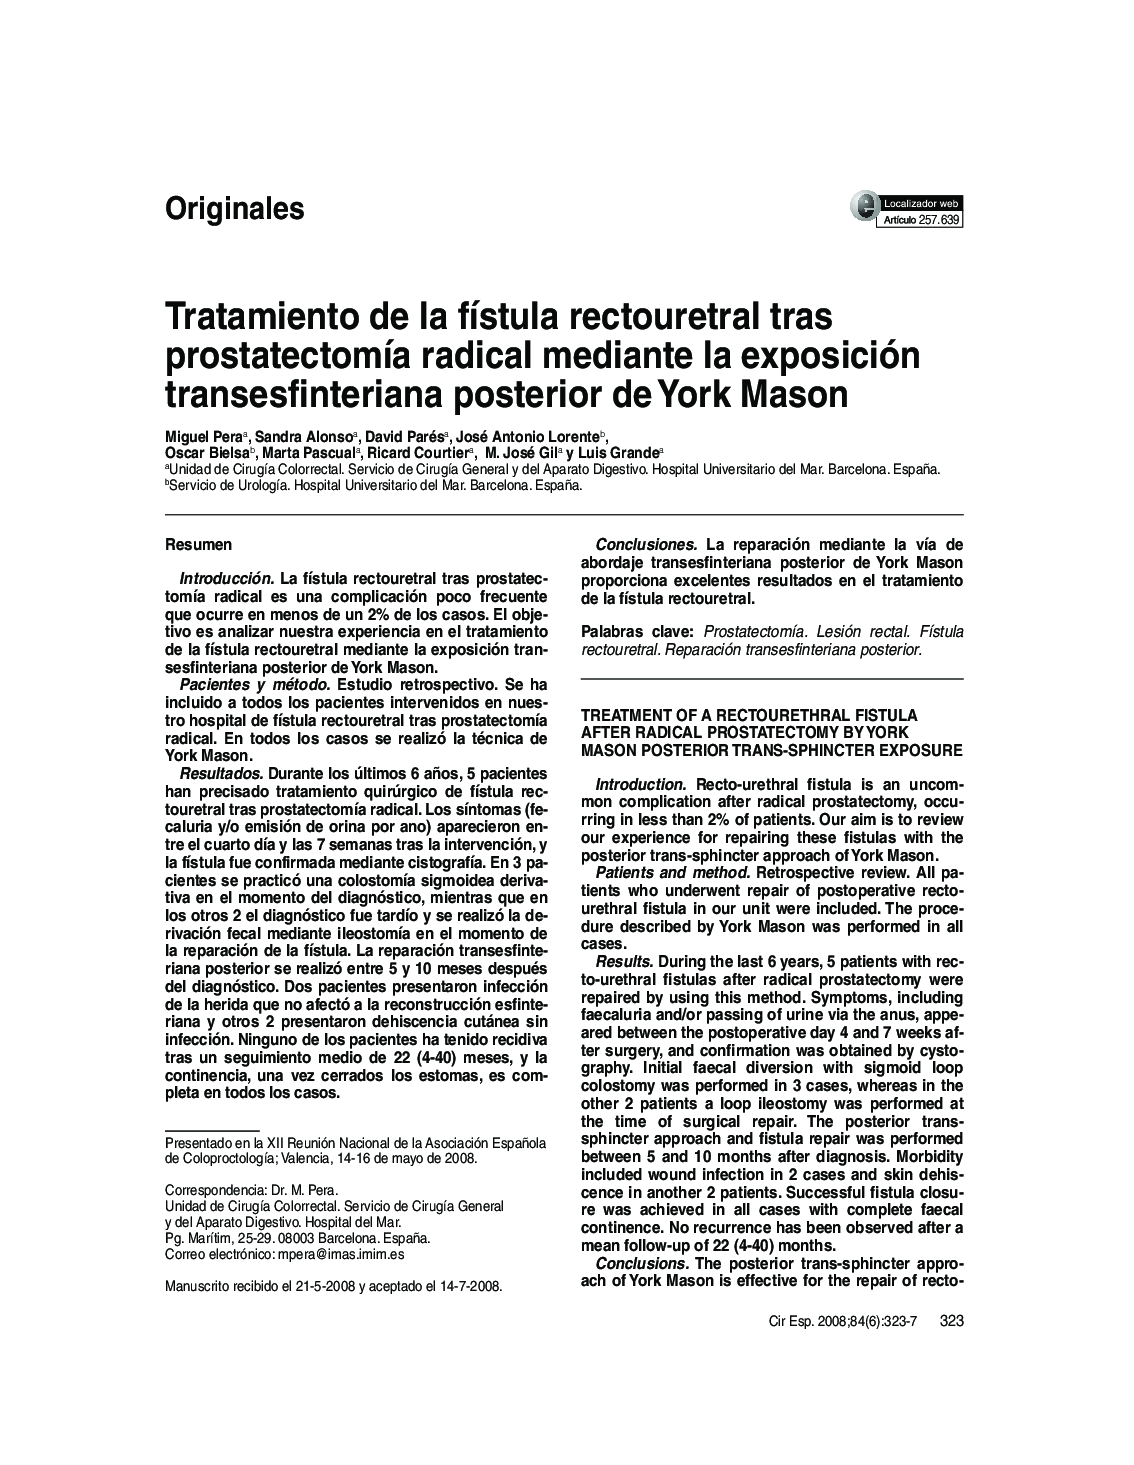 Tratamiento de la fístula rectouretral tras prostatectomía radical mediante la exposición transesfinteriana posterior de York Mason